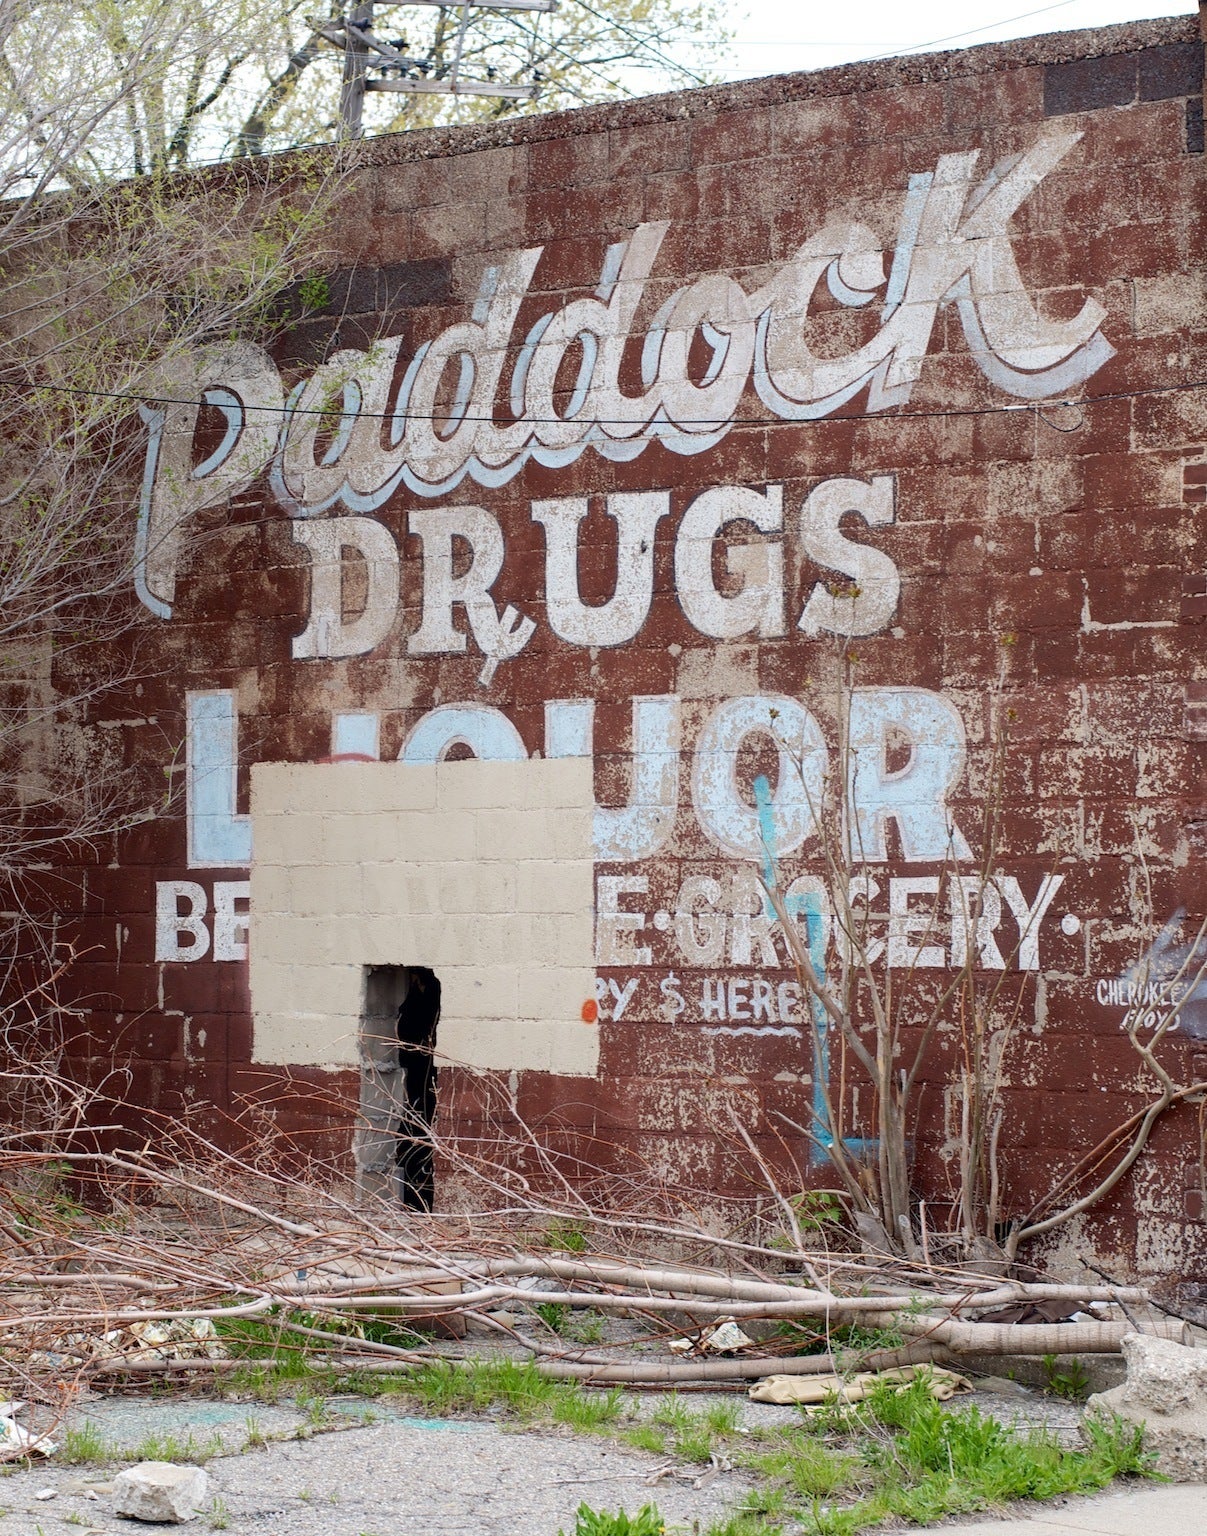 Lincoln Clarkes Landscape Photograph - Paddock Drugs, Detriot 2011